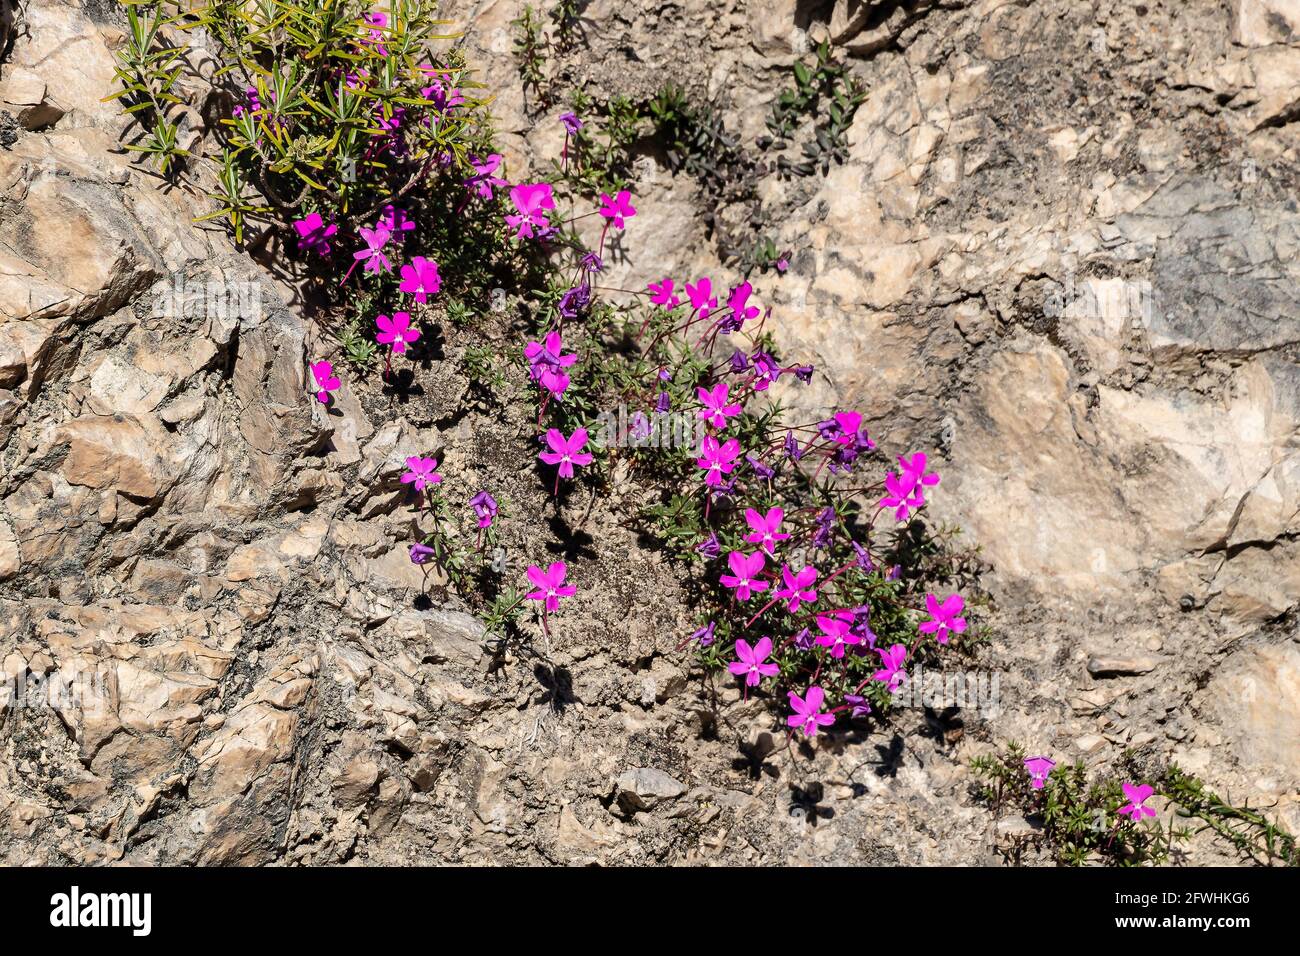 La Violeta de Cazorla o Viola cazorlensis è una specie endemica della Sierra de Cazorla, Segura e Las Villas, di natura rupicolosa, fiorisce i. Foto Stock